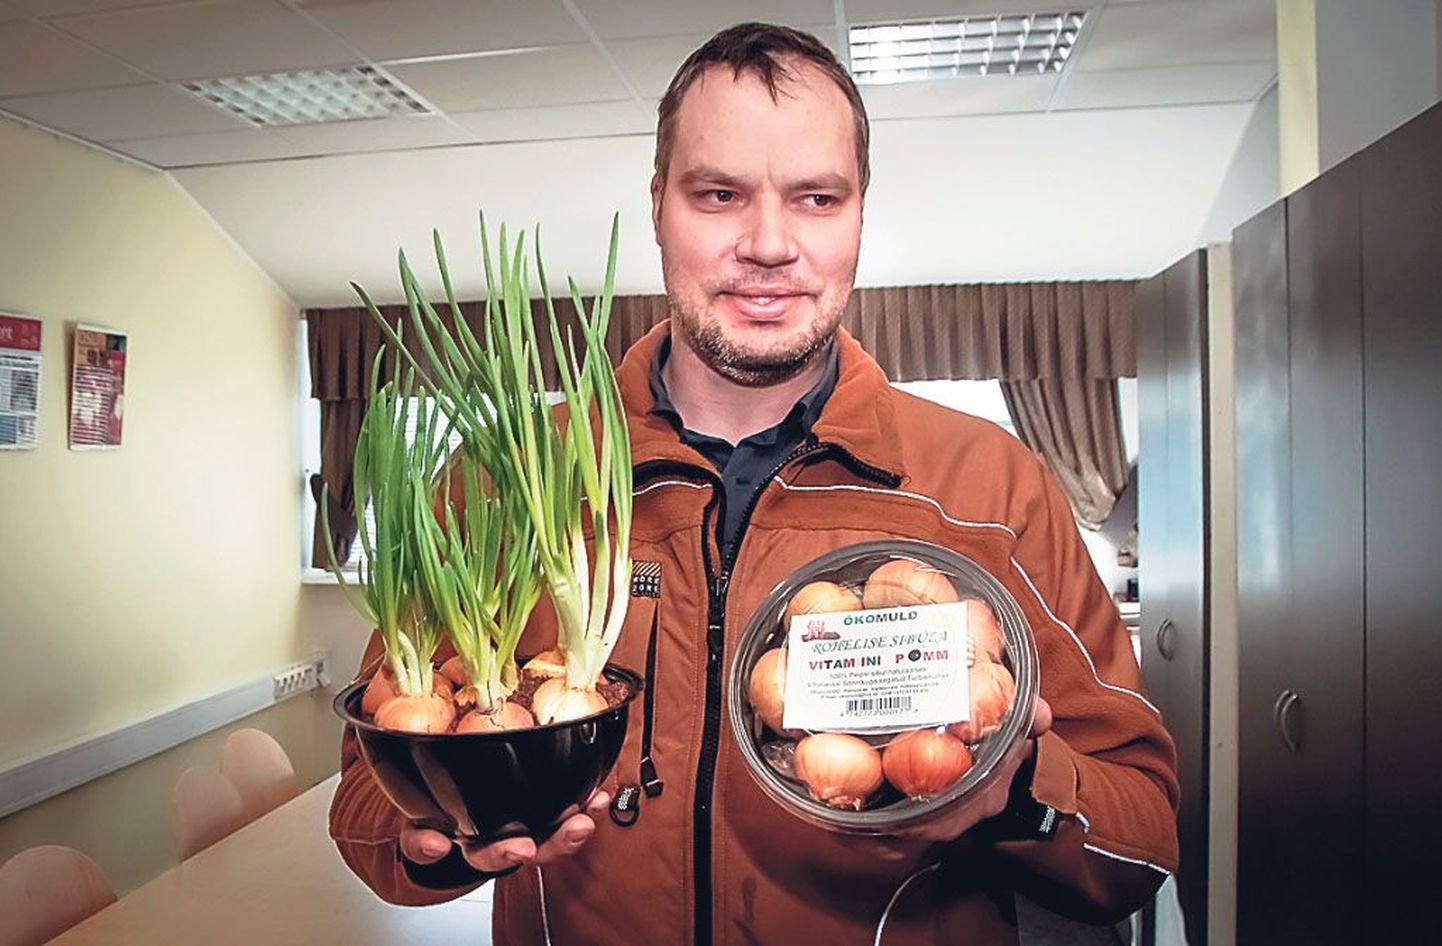 Varbla vallas vihmaussitalu pidav Veiko Alberg mõtles välja oma vitamiinipommi, mis teeb korteriinimesel rohelise sibula kasvatamise ülilihtsaks ja -kiireks.